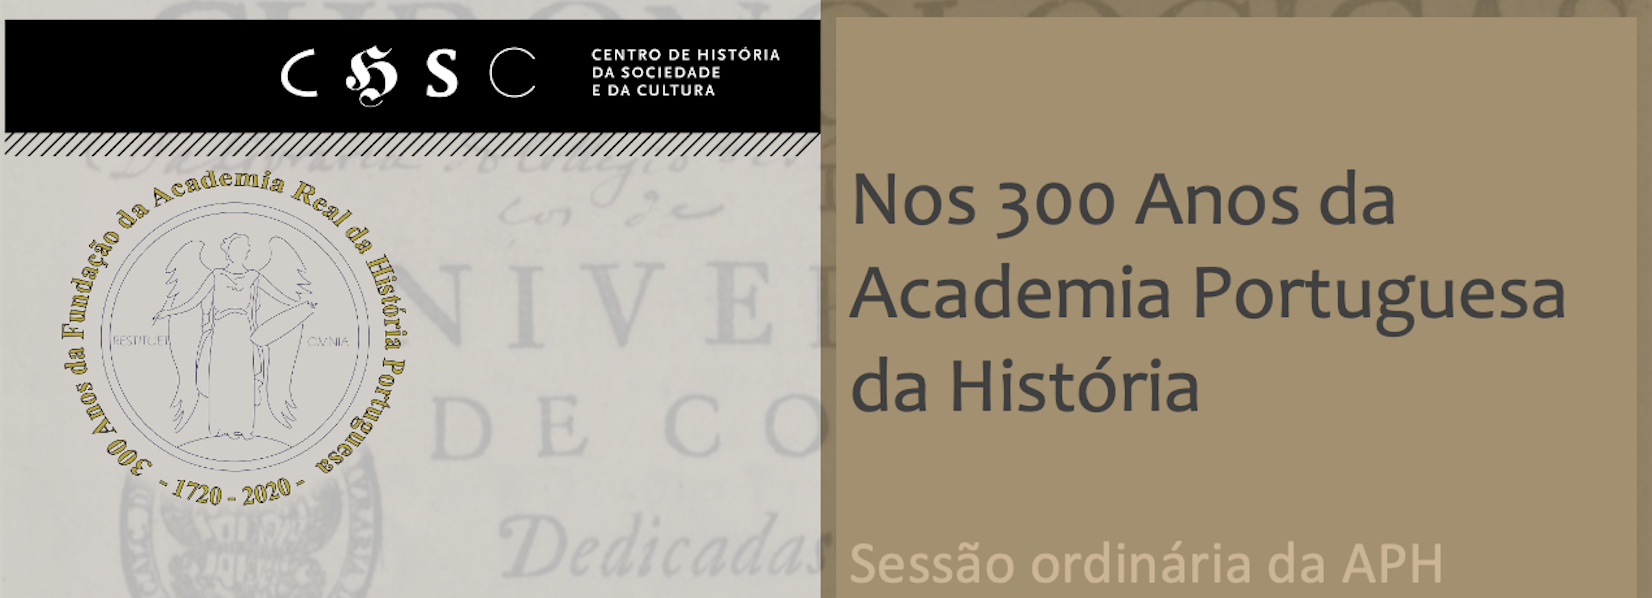 300 Anos da Academia Portuguesa da História